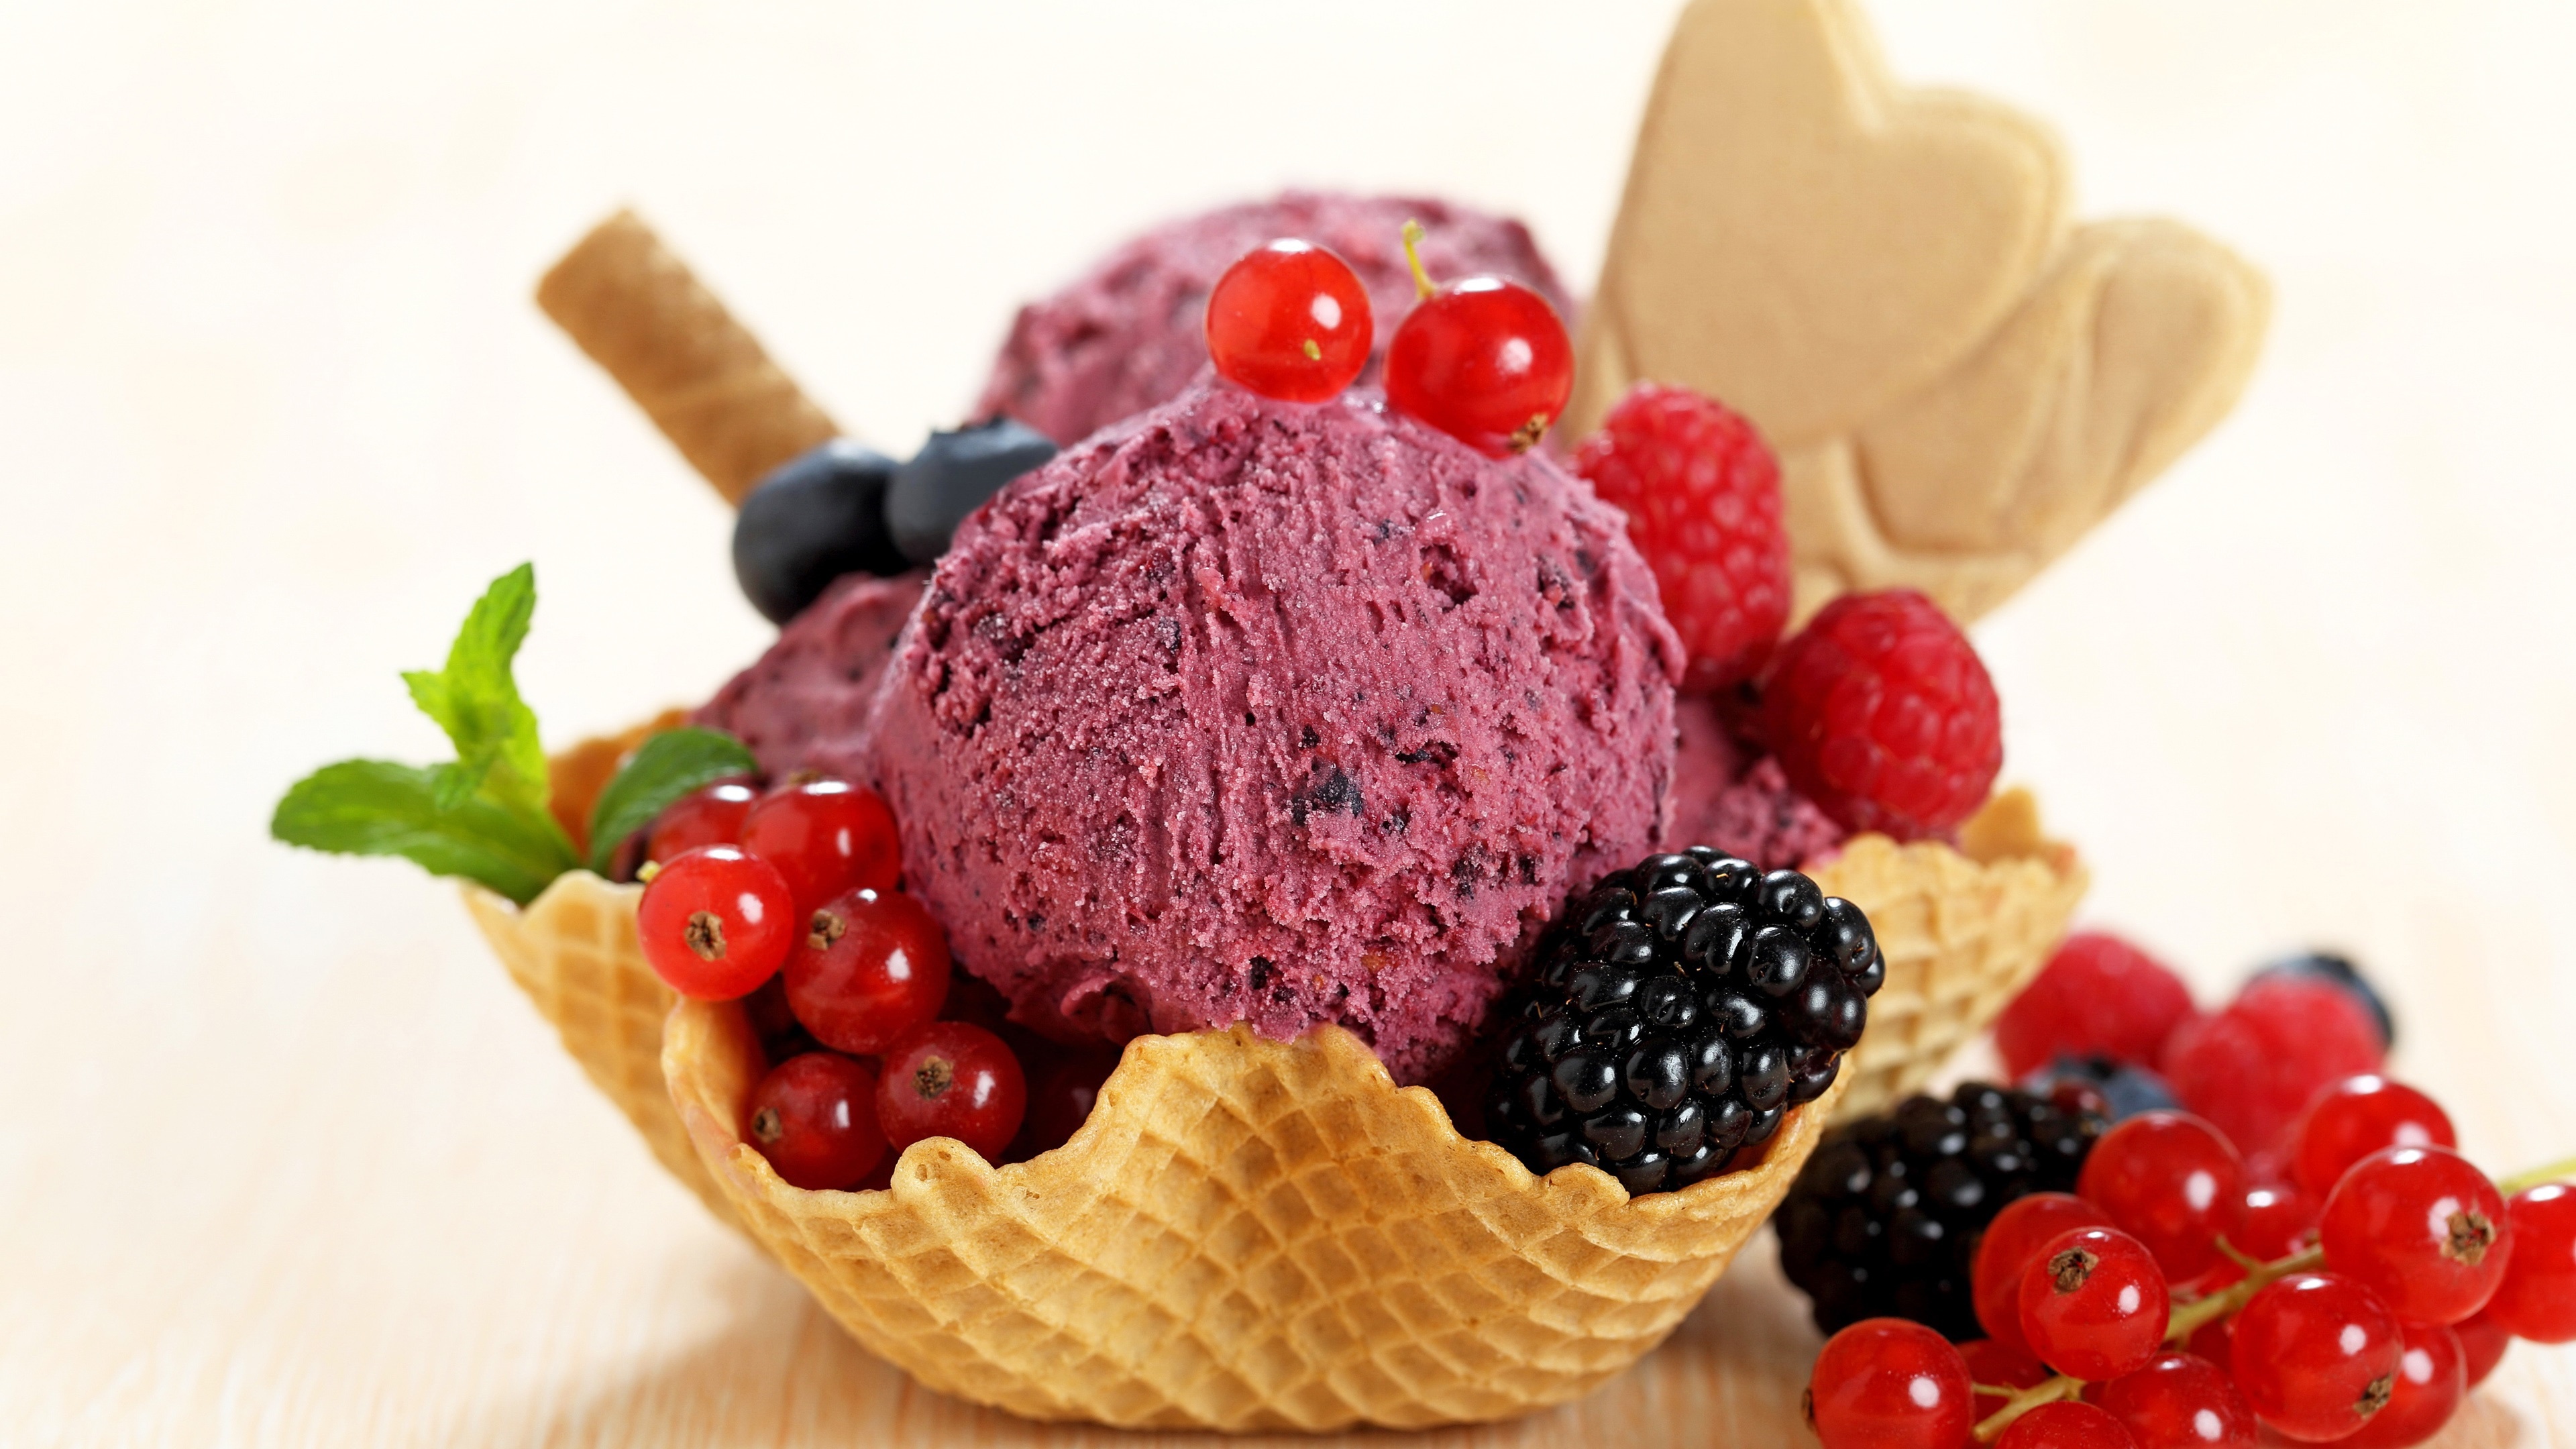 Berries summer dessert, Colorful and juicy, Sorbet delight, Scrumptious treat, 3840x2160 4K Desktop